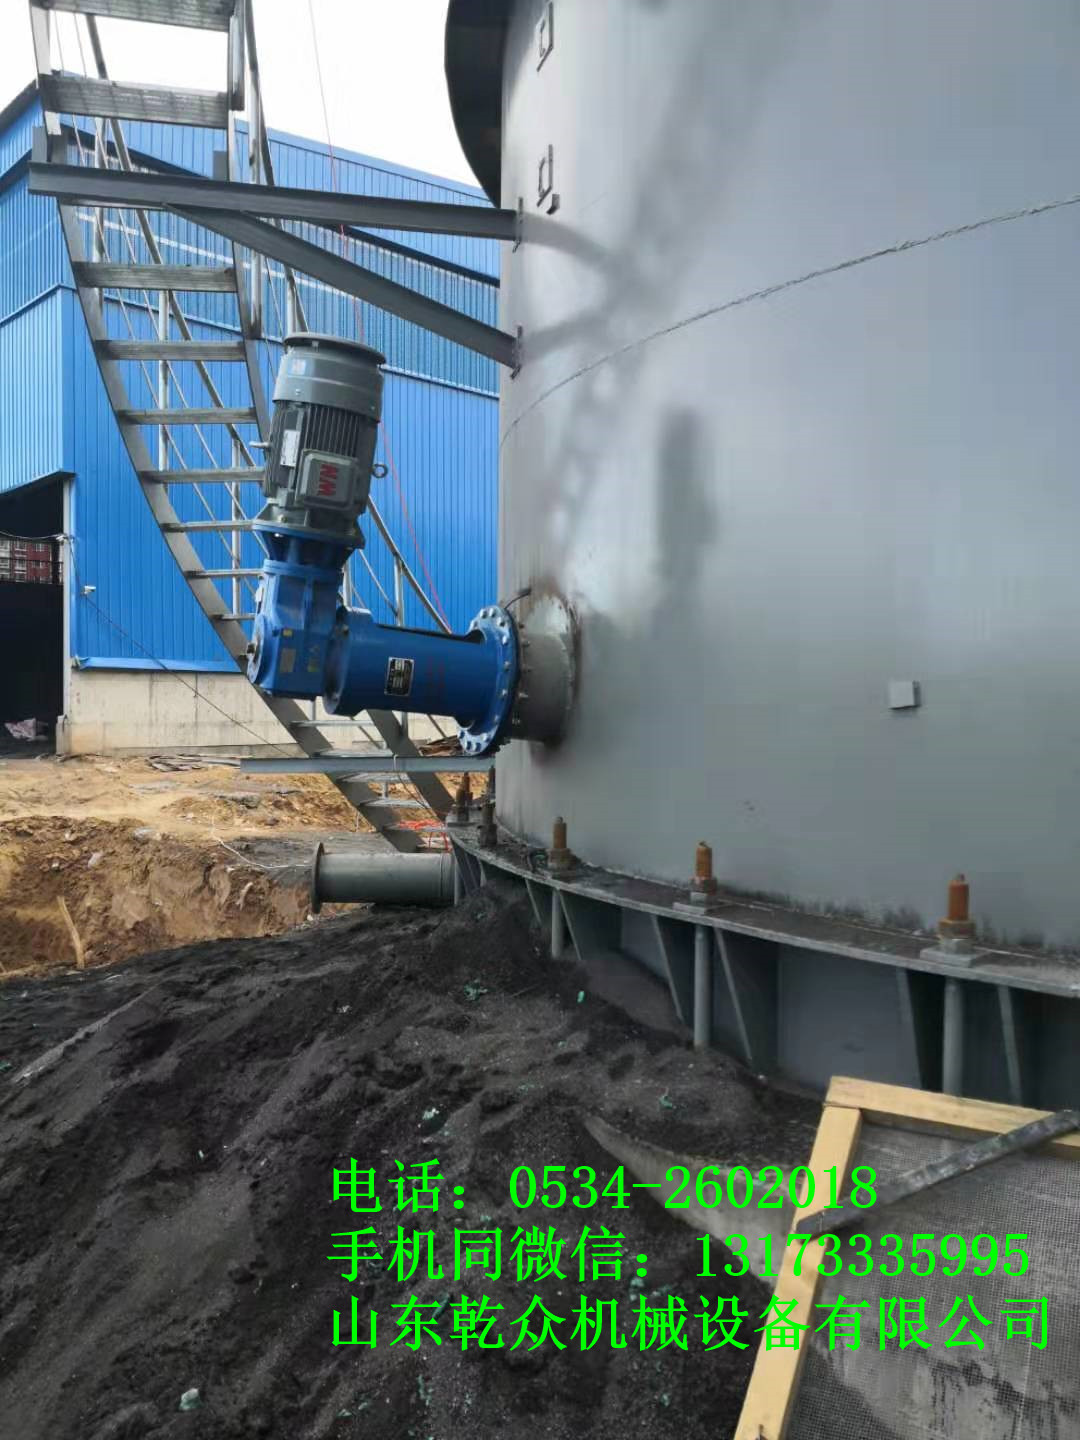 内蒙古热电项目脱硫塔侧入式搅拌器现场指导安装